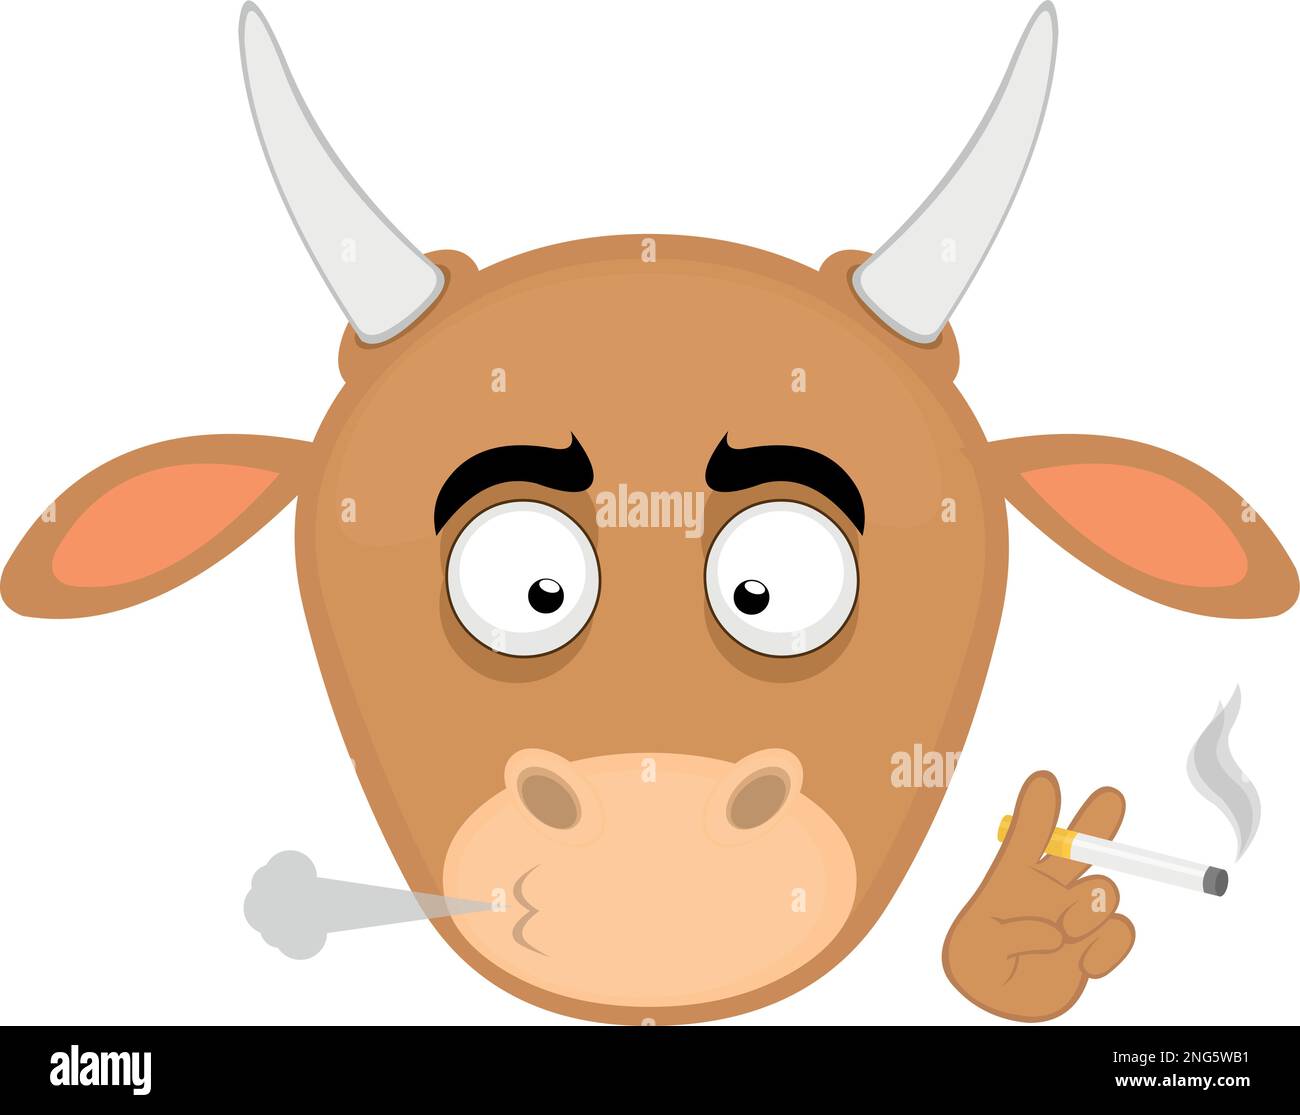 vector illustration face of a cartoon cow smoking a cigarette Stock Vector